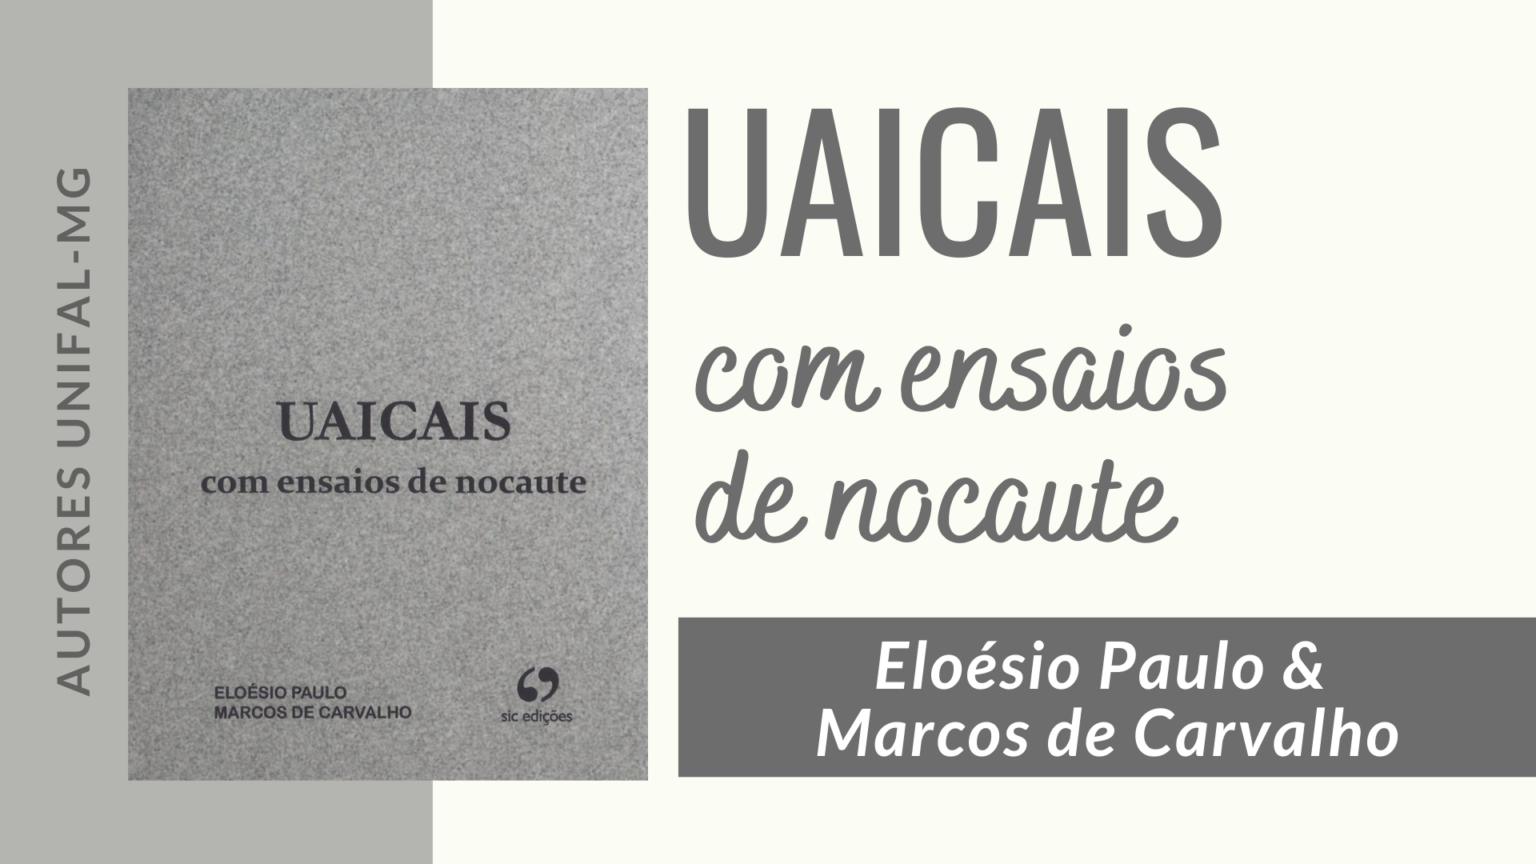 “UAICAIS com ensaios de nocaute” – Eloésio Paulo & Marcos de Carvalho